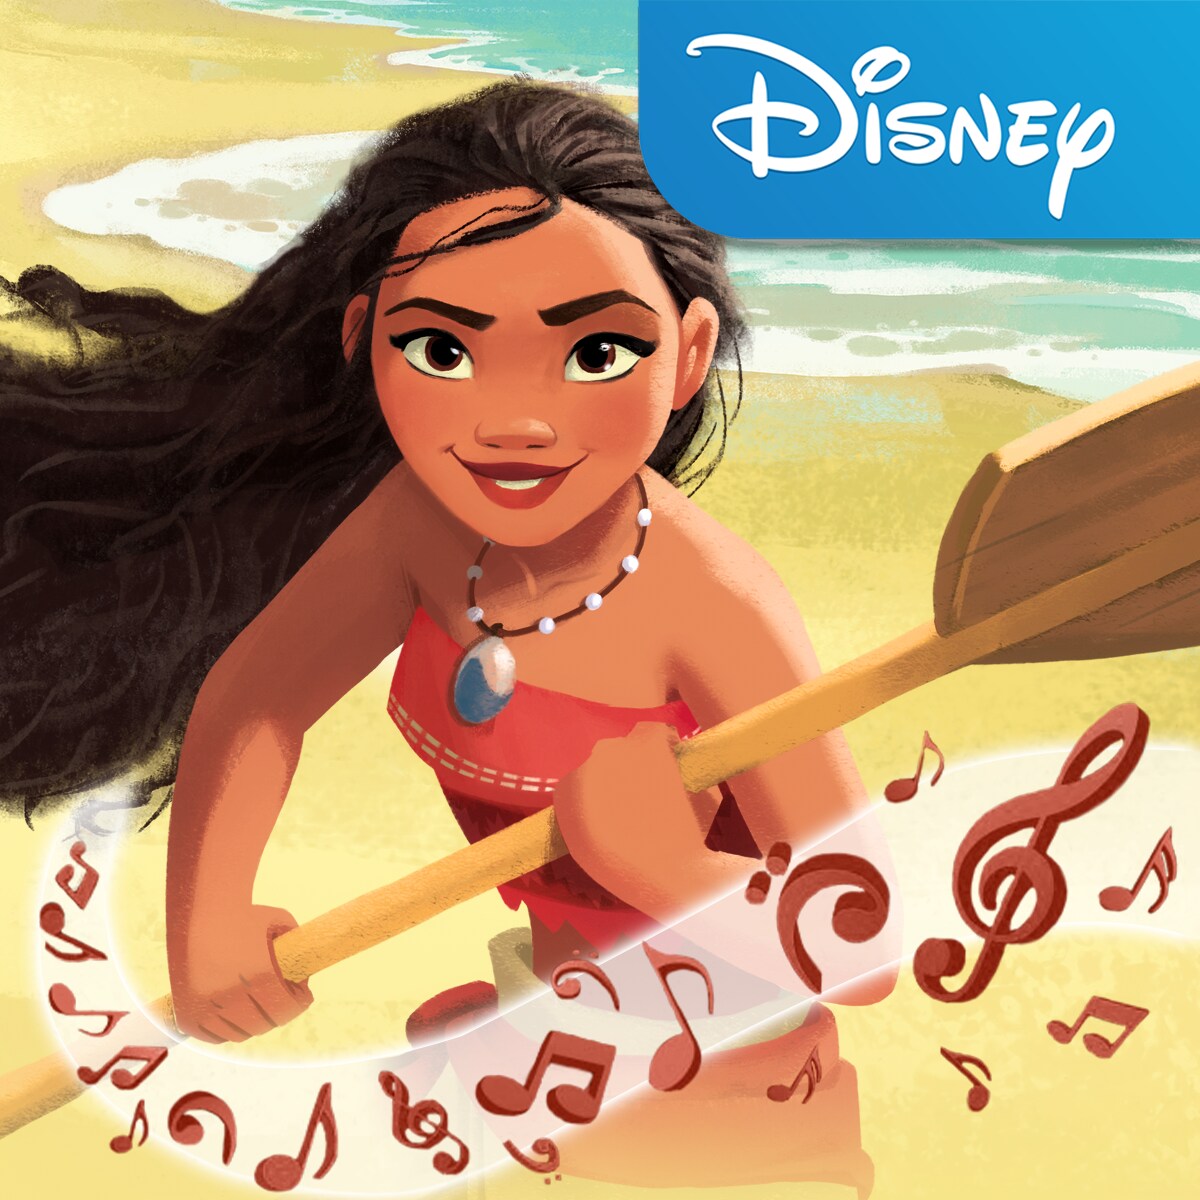 Moana Disney Full Movie Download